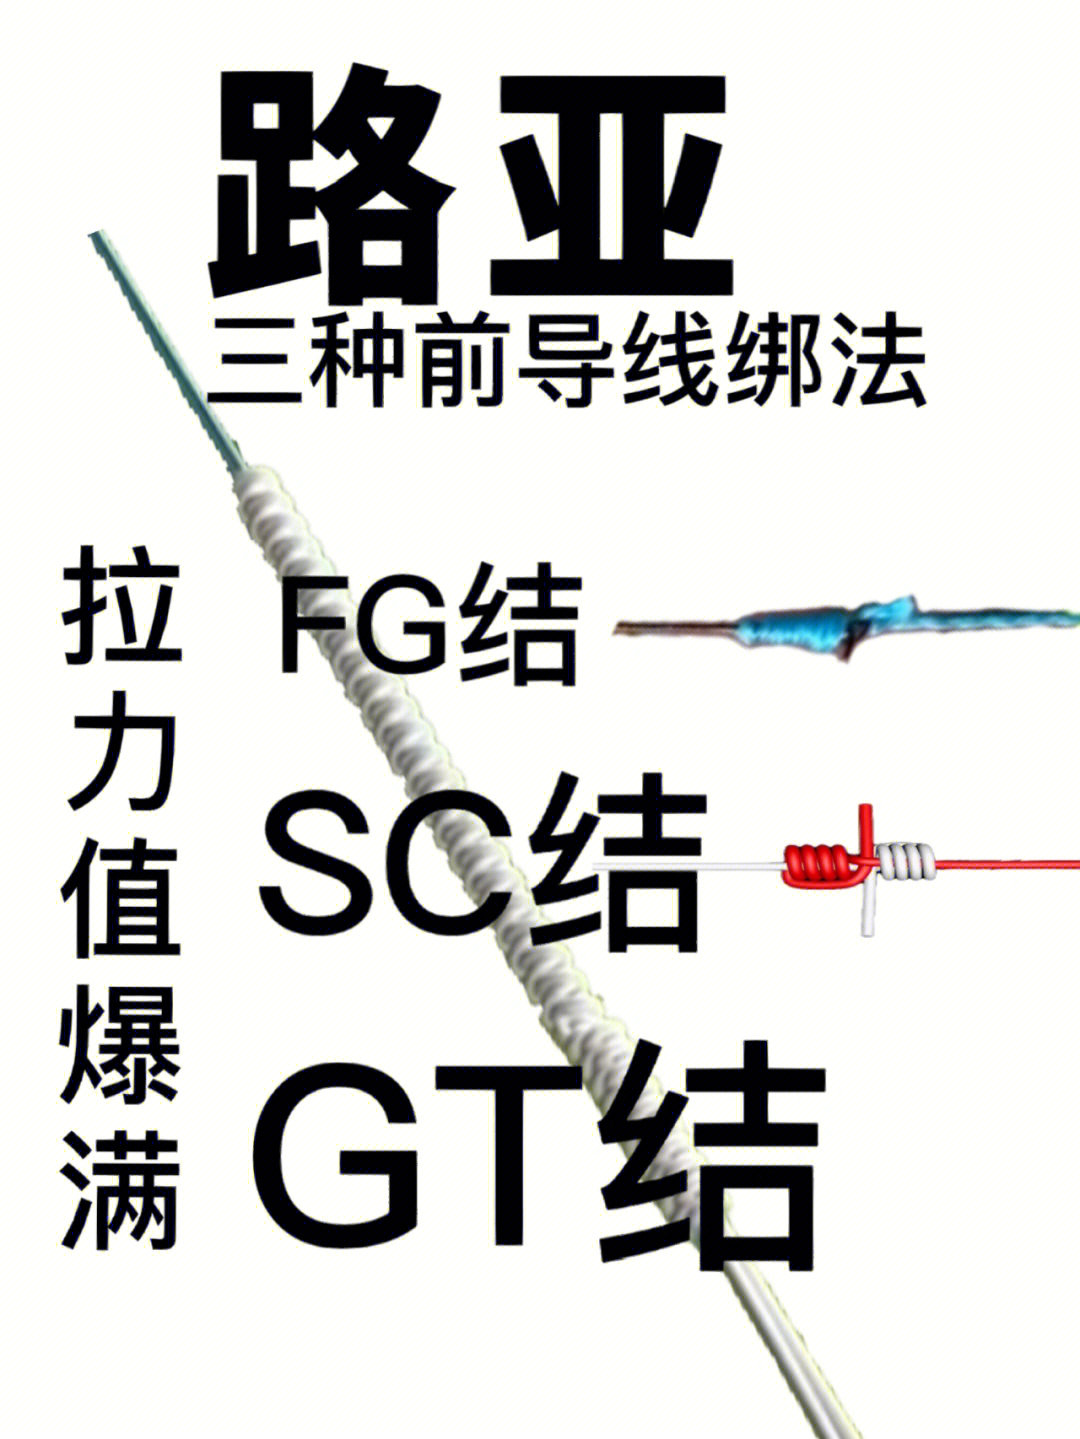 三种路亚线结的介绍顺滑牢固,公认最牢固且顺滑的前导线gt结,fg结绑法